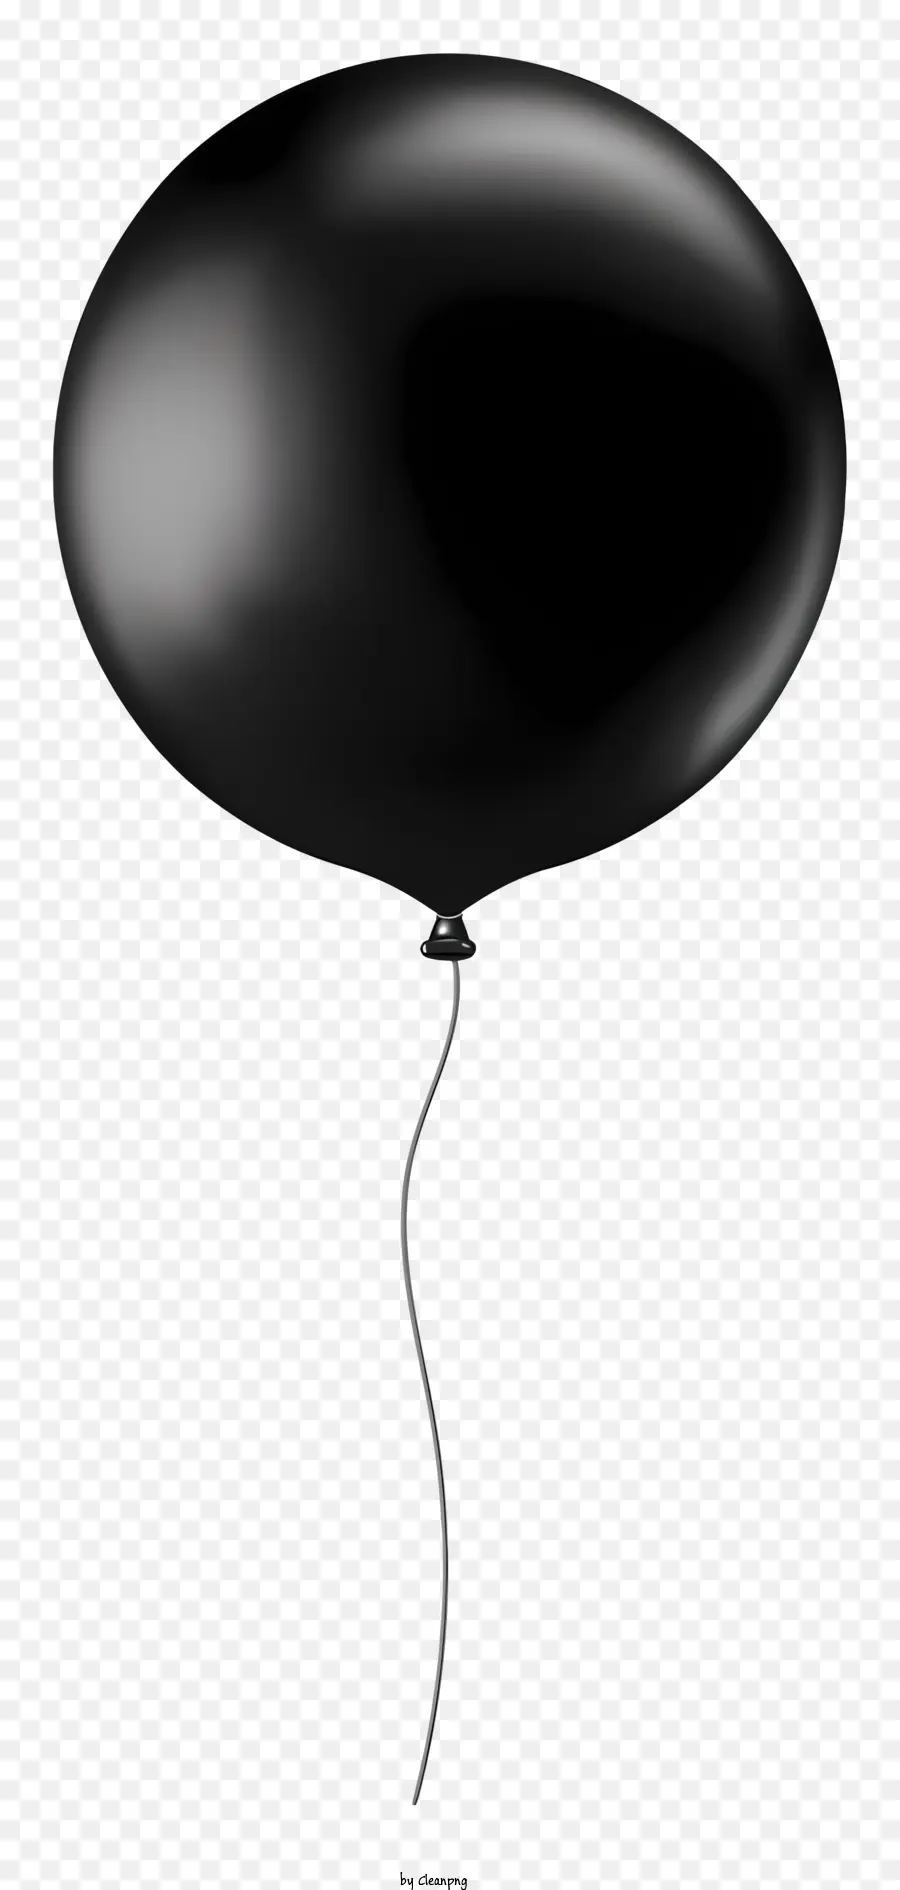 bóng đen - Khinh khí cầu trôi nổi trong không gian trống, không được trang trí và xì hơi